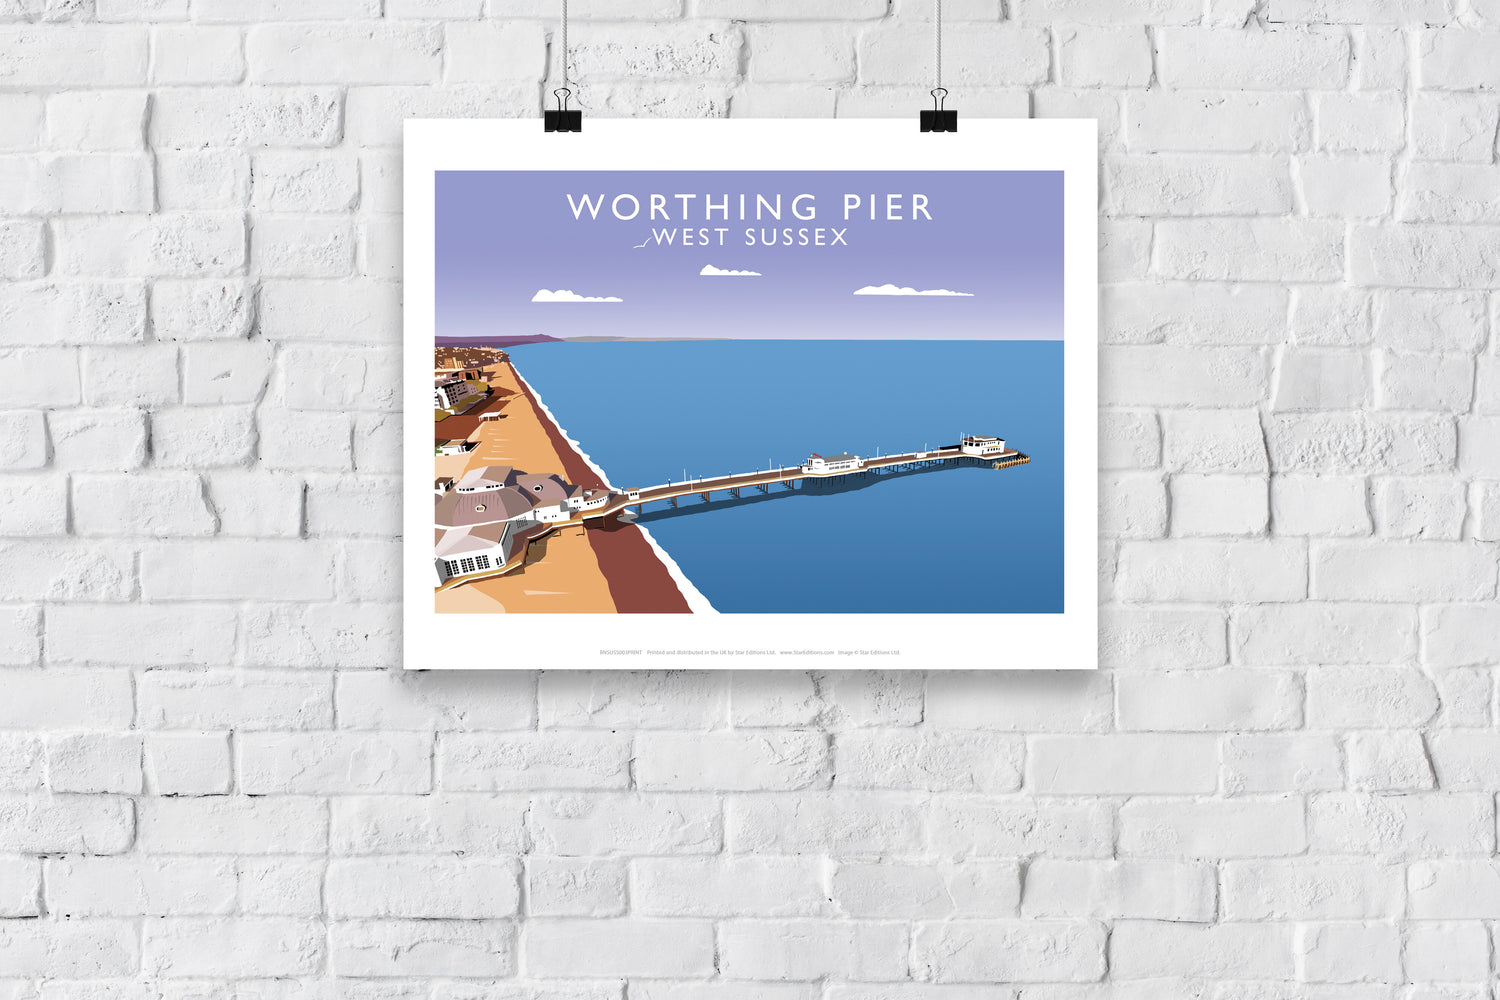 Worthing Pier, West Sussex - Art Print